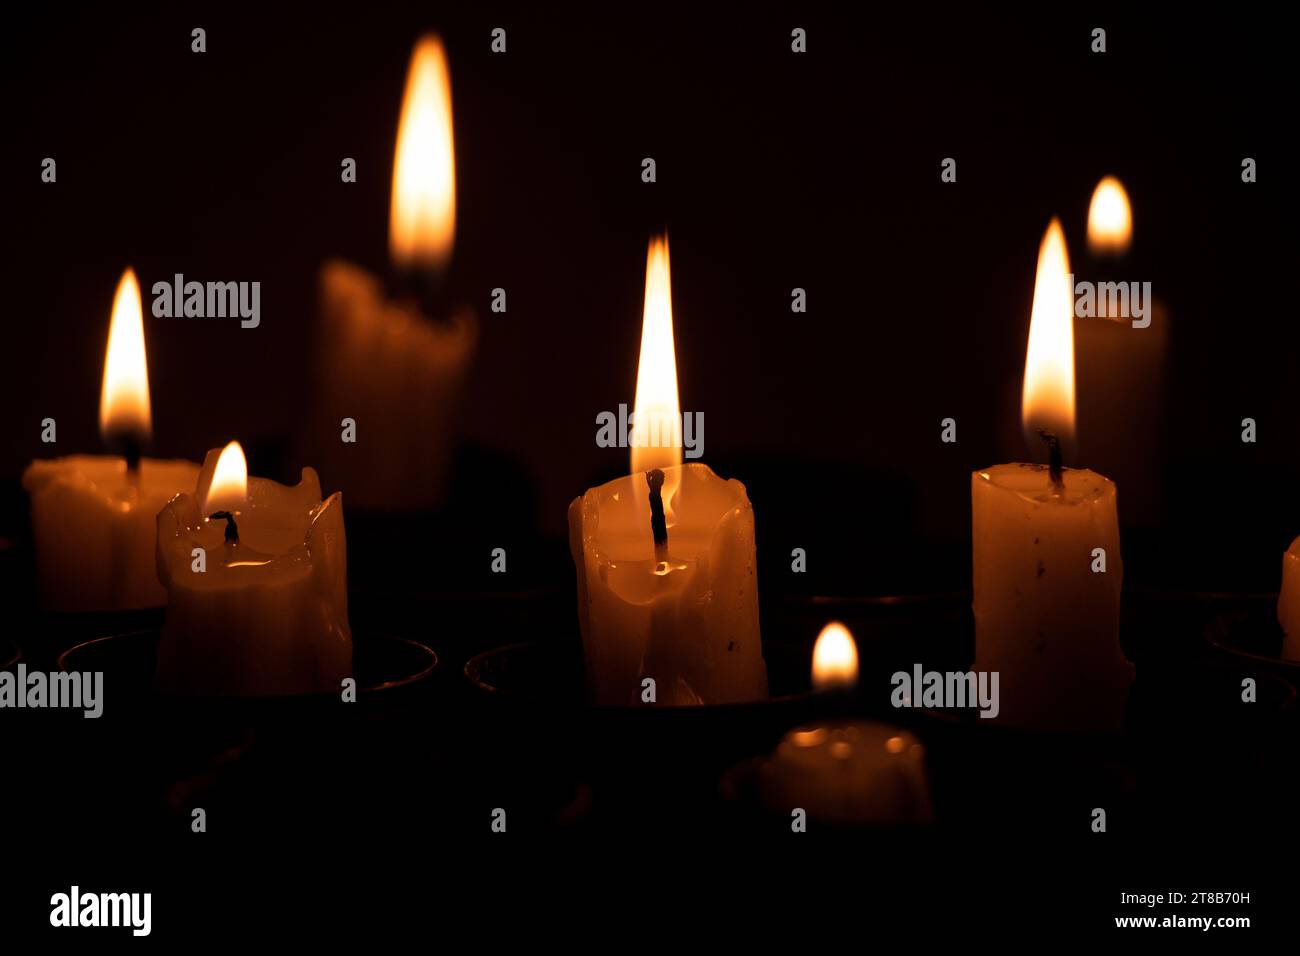 Le candele incendiate si trovano in involucri di lanciagranate sprecati al buio, tristezza per coloro che sono stati uccisi nella guerra in Ucraina Foto Stock